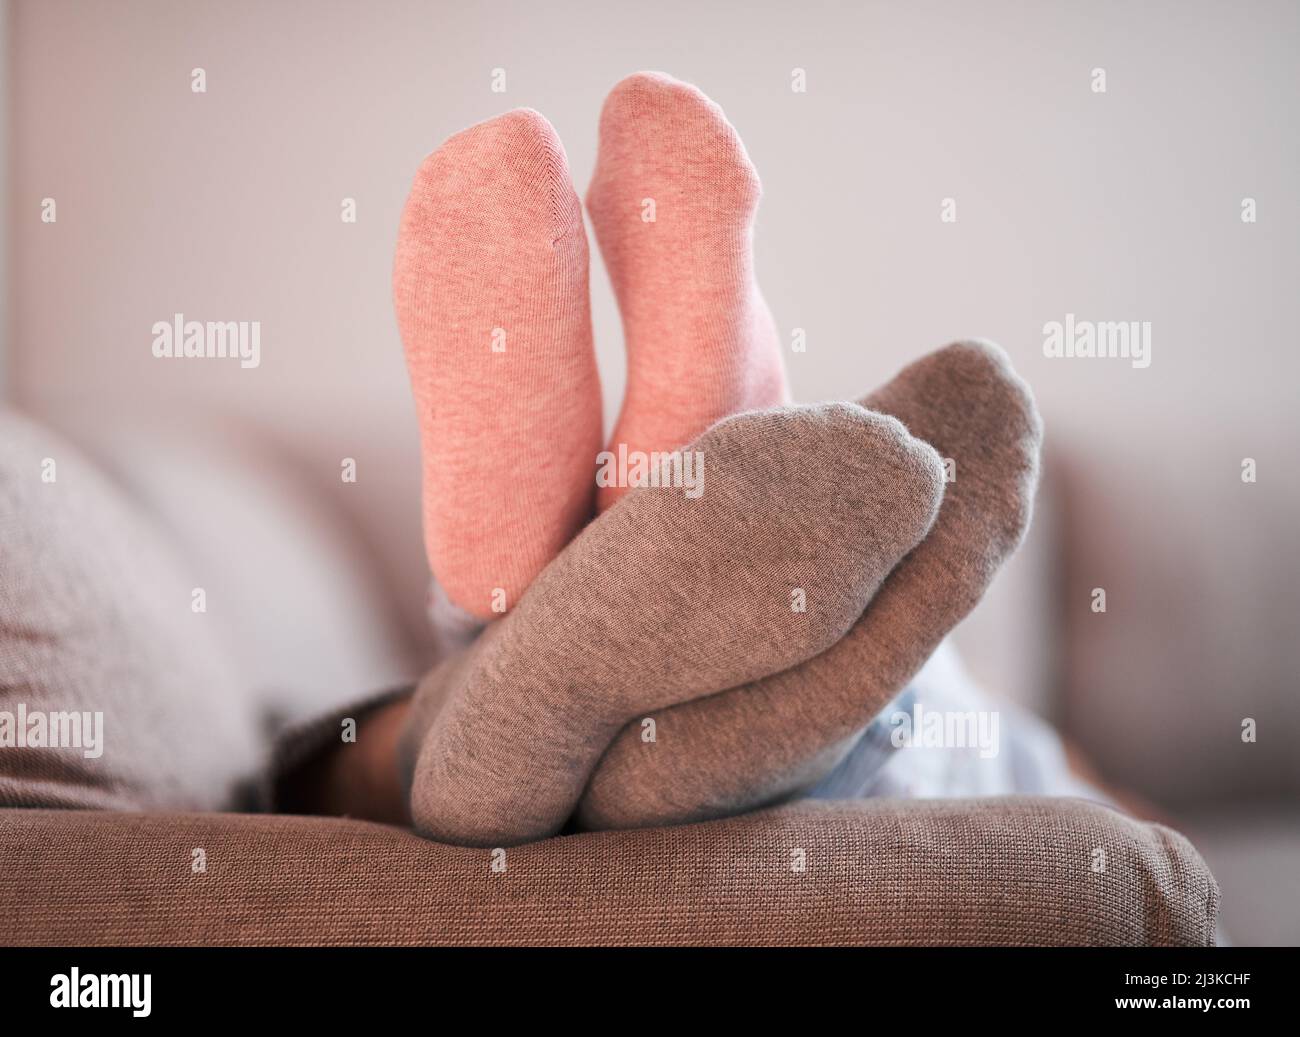 Emmêlés sur le canapé. Photo courte d'un pied recouvert d'une chaussette pour couples méconnaissable. Banque D'Images